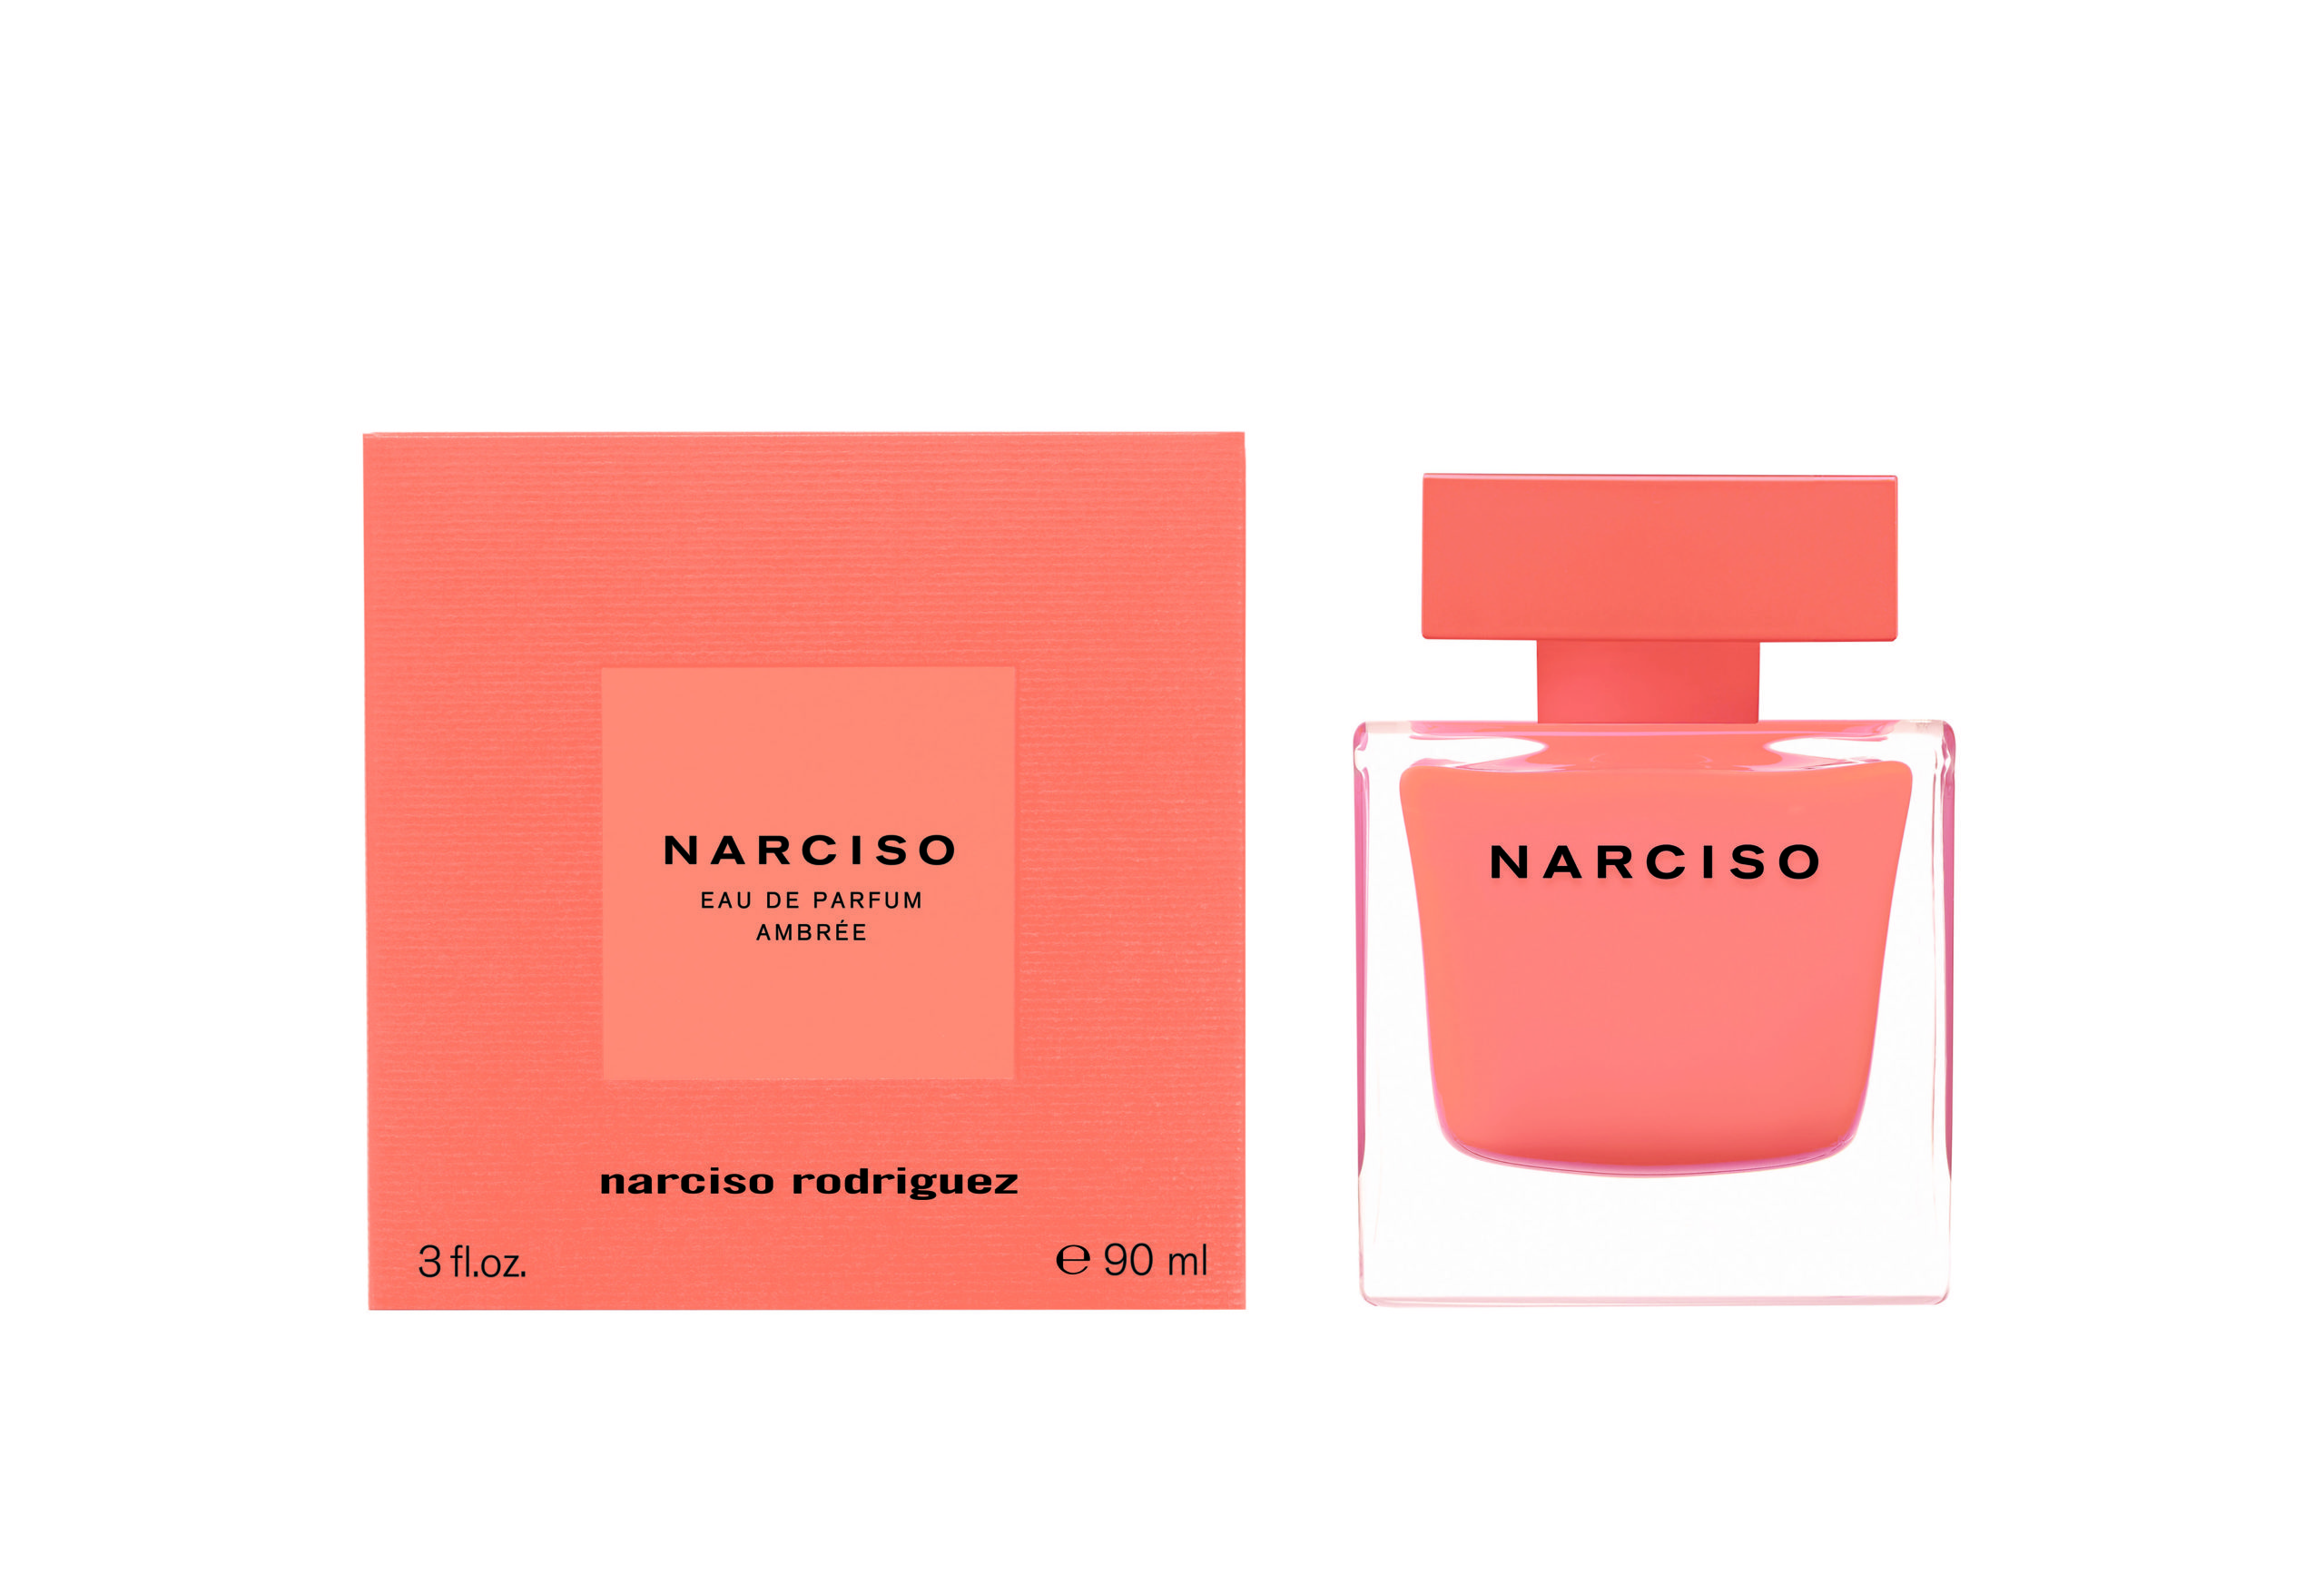 Narciso eau de parfum Ambrée 90 ml pack